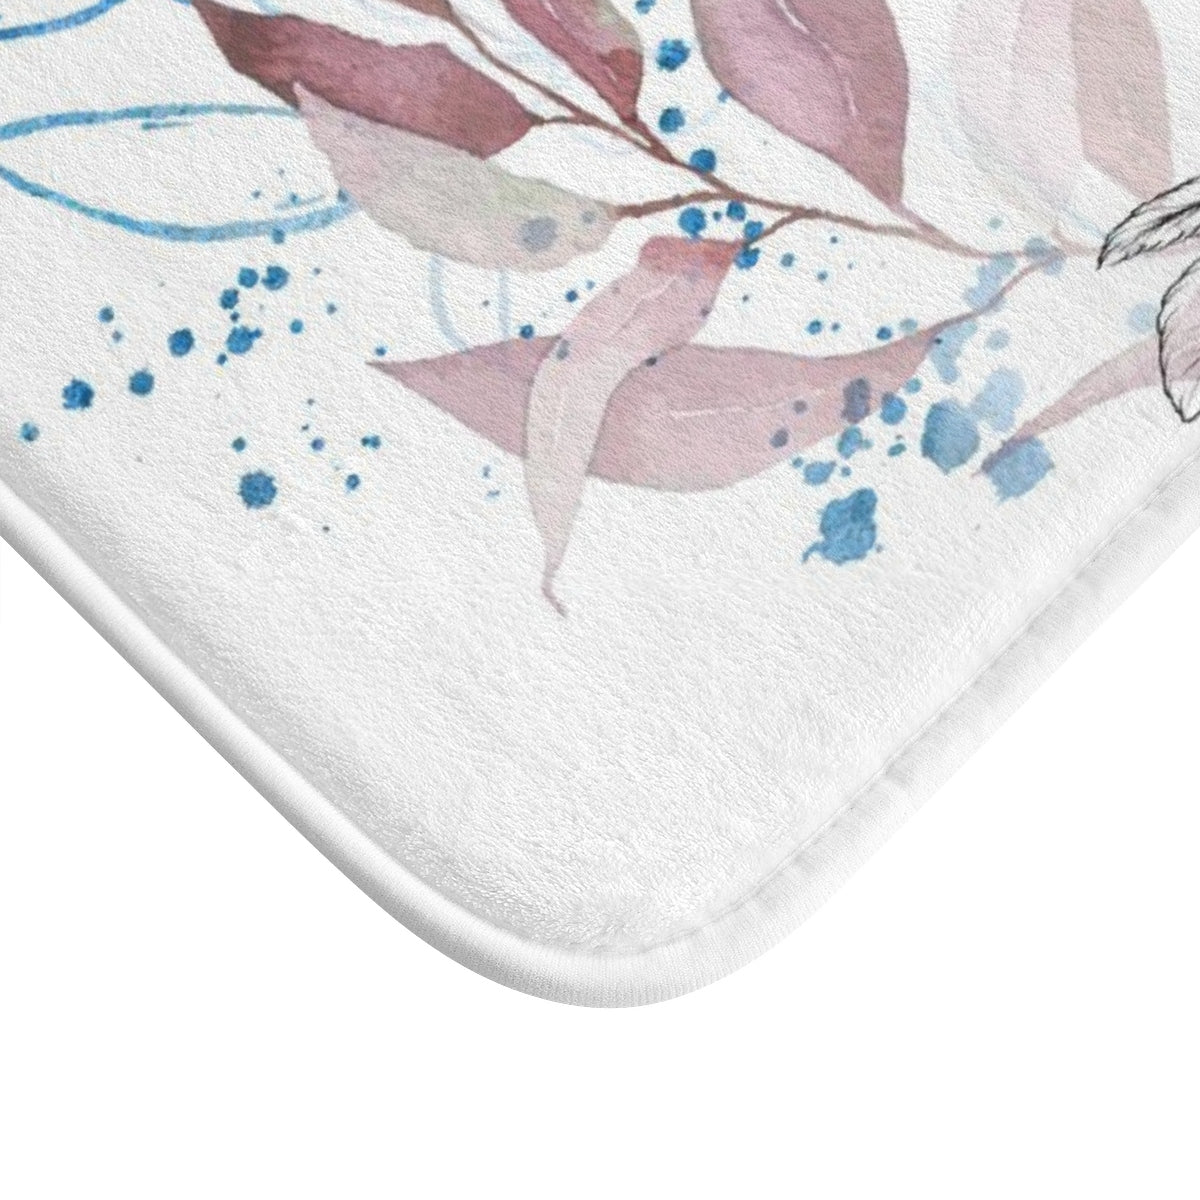 Flower Bath Mat - Liz Kapiloto Art & Design